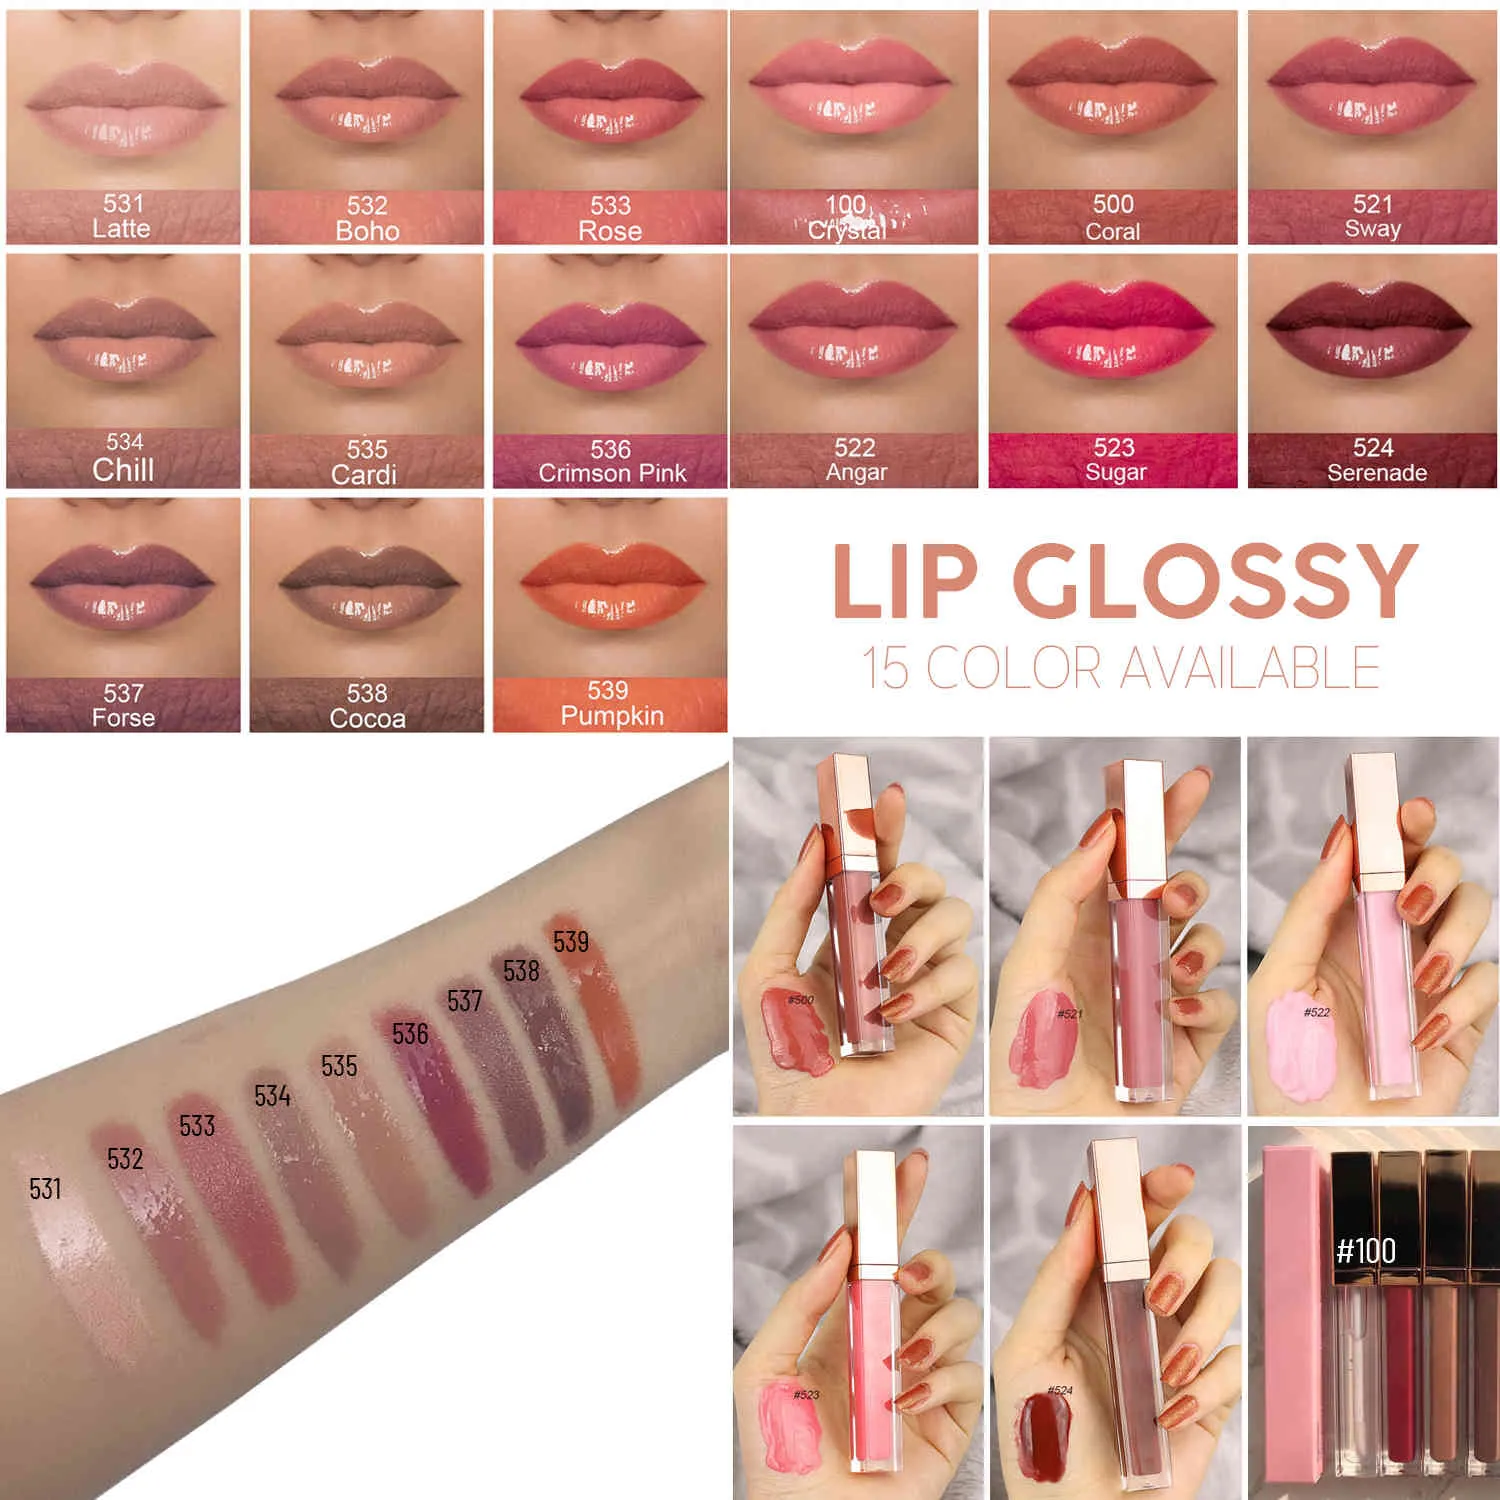 Radiant Lip Gloss Private Label Personnalisé Imprimé sur Shiny LipglossMatte Liquid Lipstick Pigmented Creamy Non-sticky